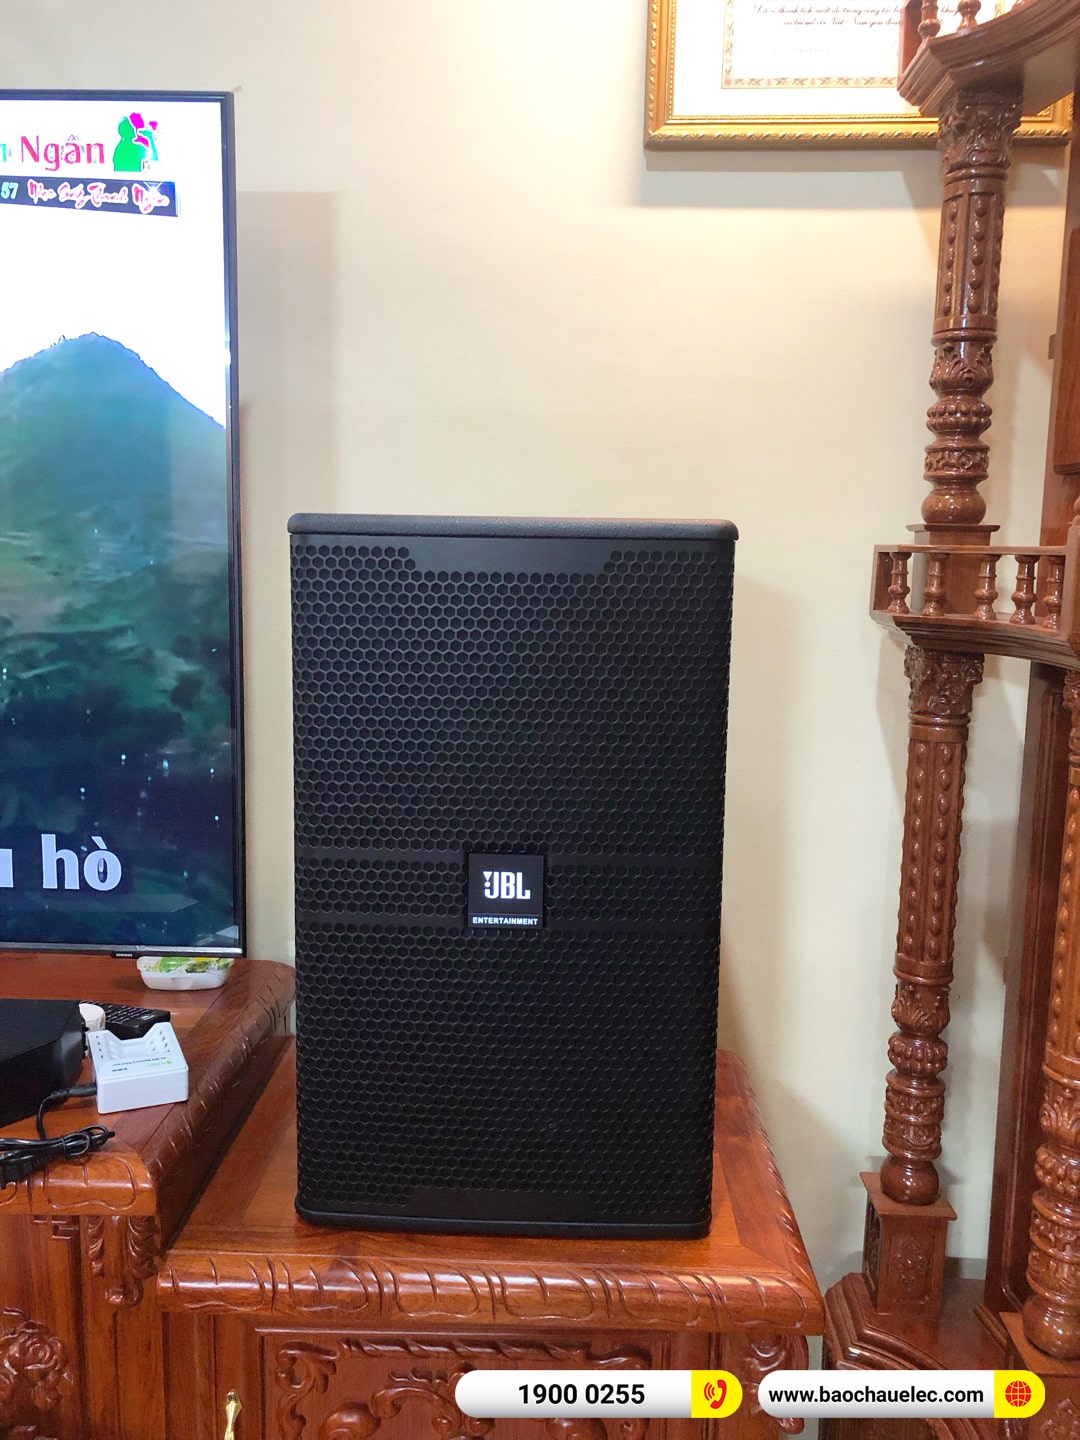 Lắp đặt dàn karaoke JBL hơn 98tr cho anh Huân tại Hà Nội (JBL KP4012 G2, VX8, VX10, JBL V8, 12SP, VM300)